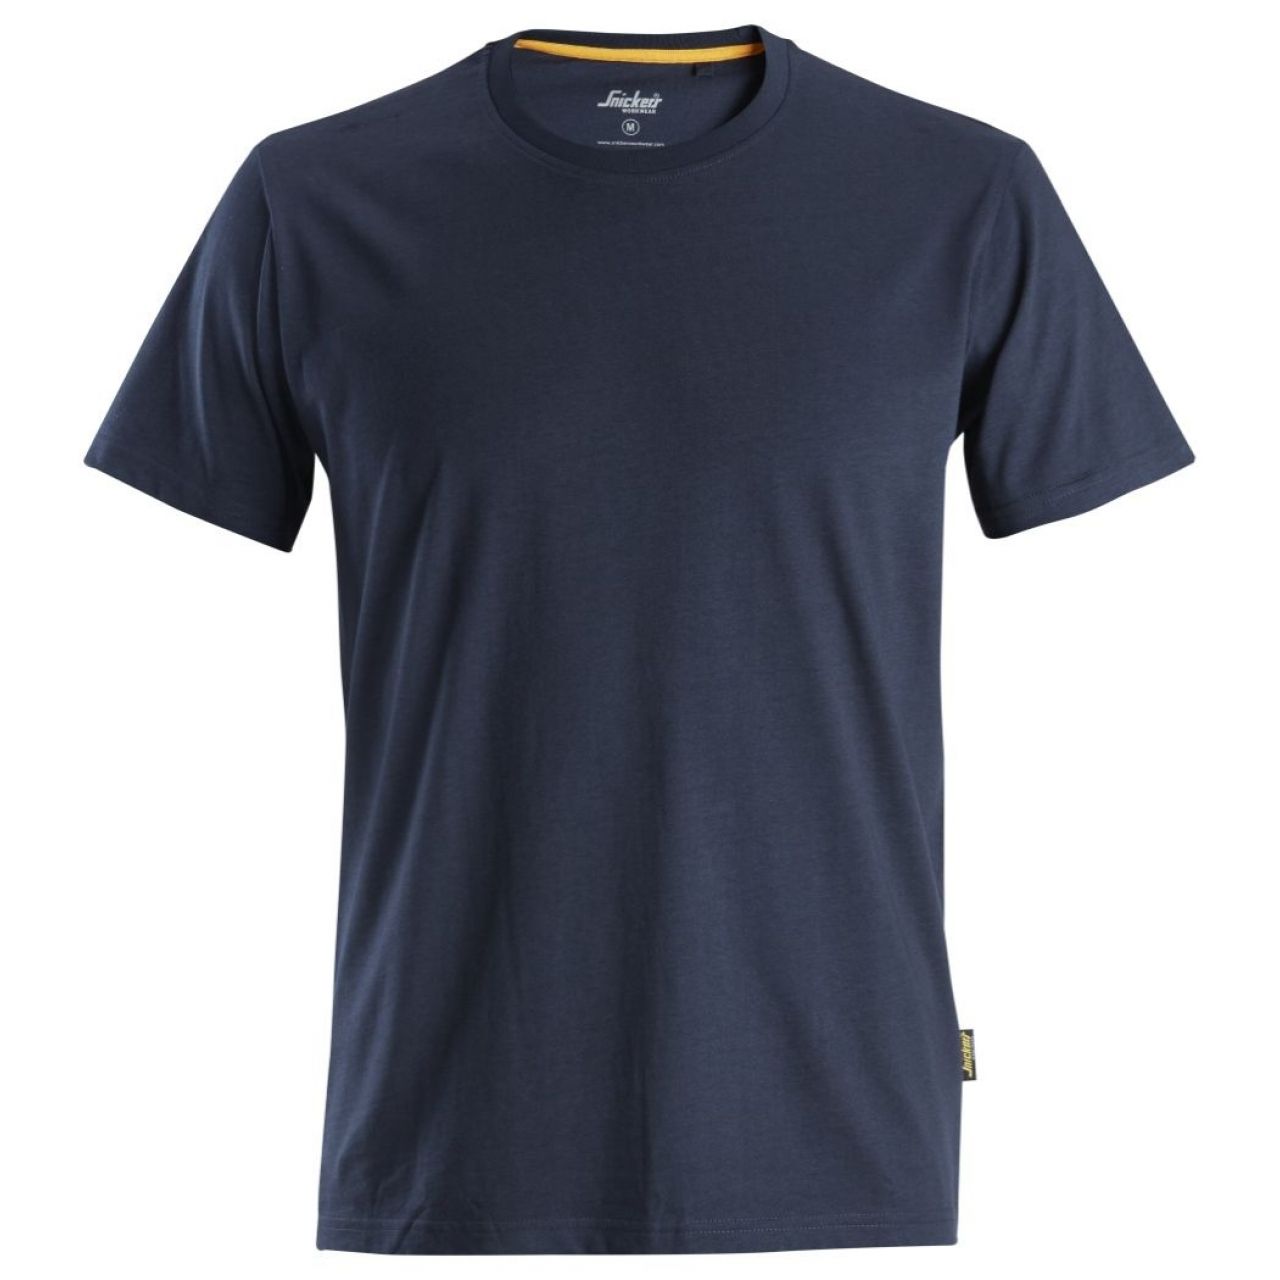 Camiseta de algodón orgánico AllroundWork Azul marino talla XXXL